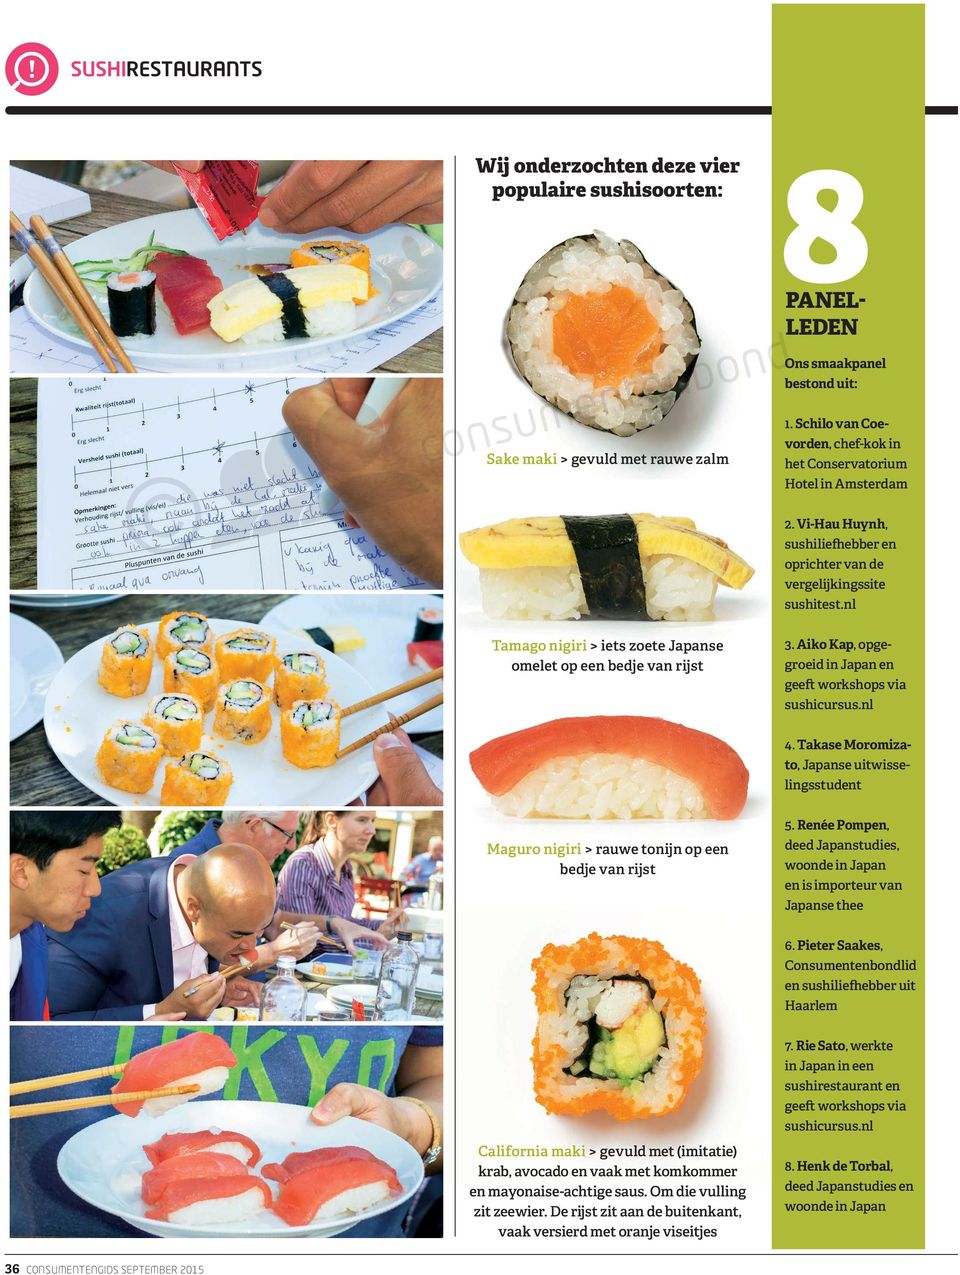 nl Tamago nigiri > iets zoete Japanse omelet op een bedje van rijst 3. Aiko Kap, opgegroeid in Japan en geeft workshops via sushicursus.nl 4.